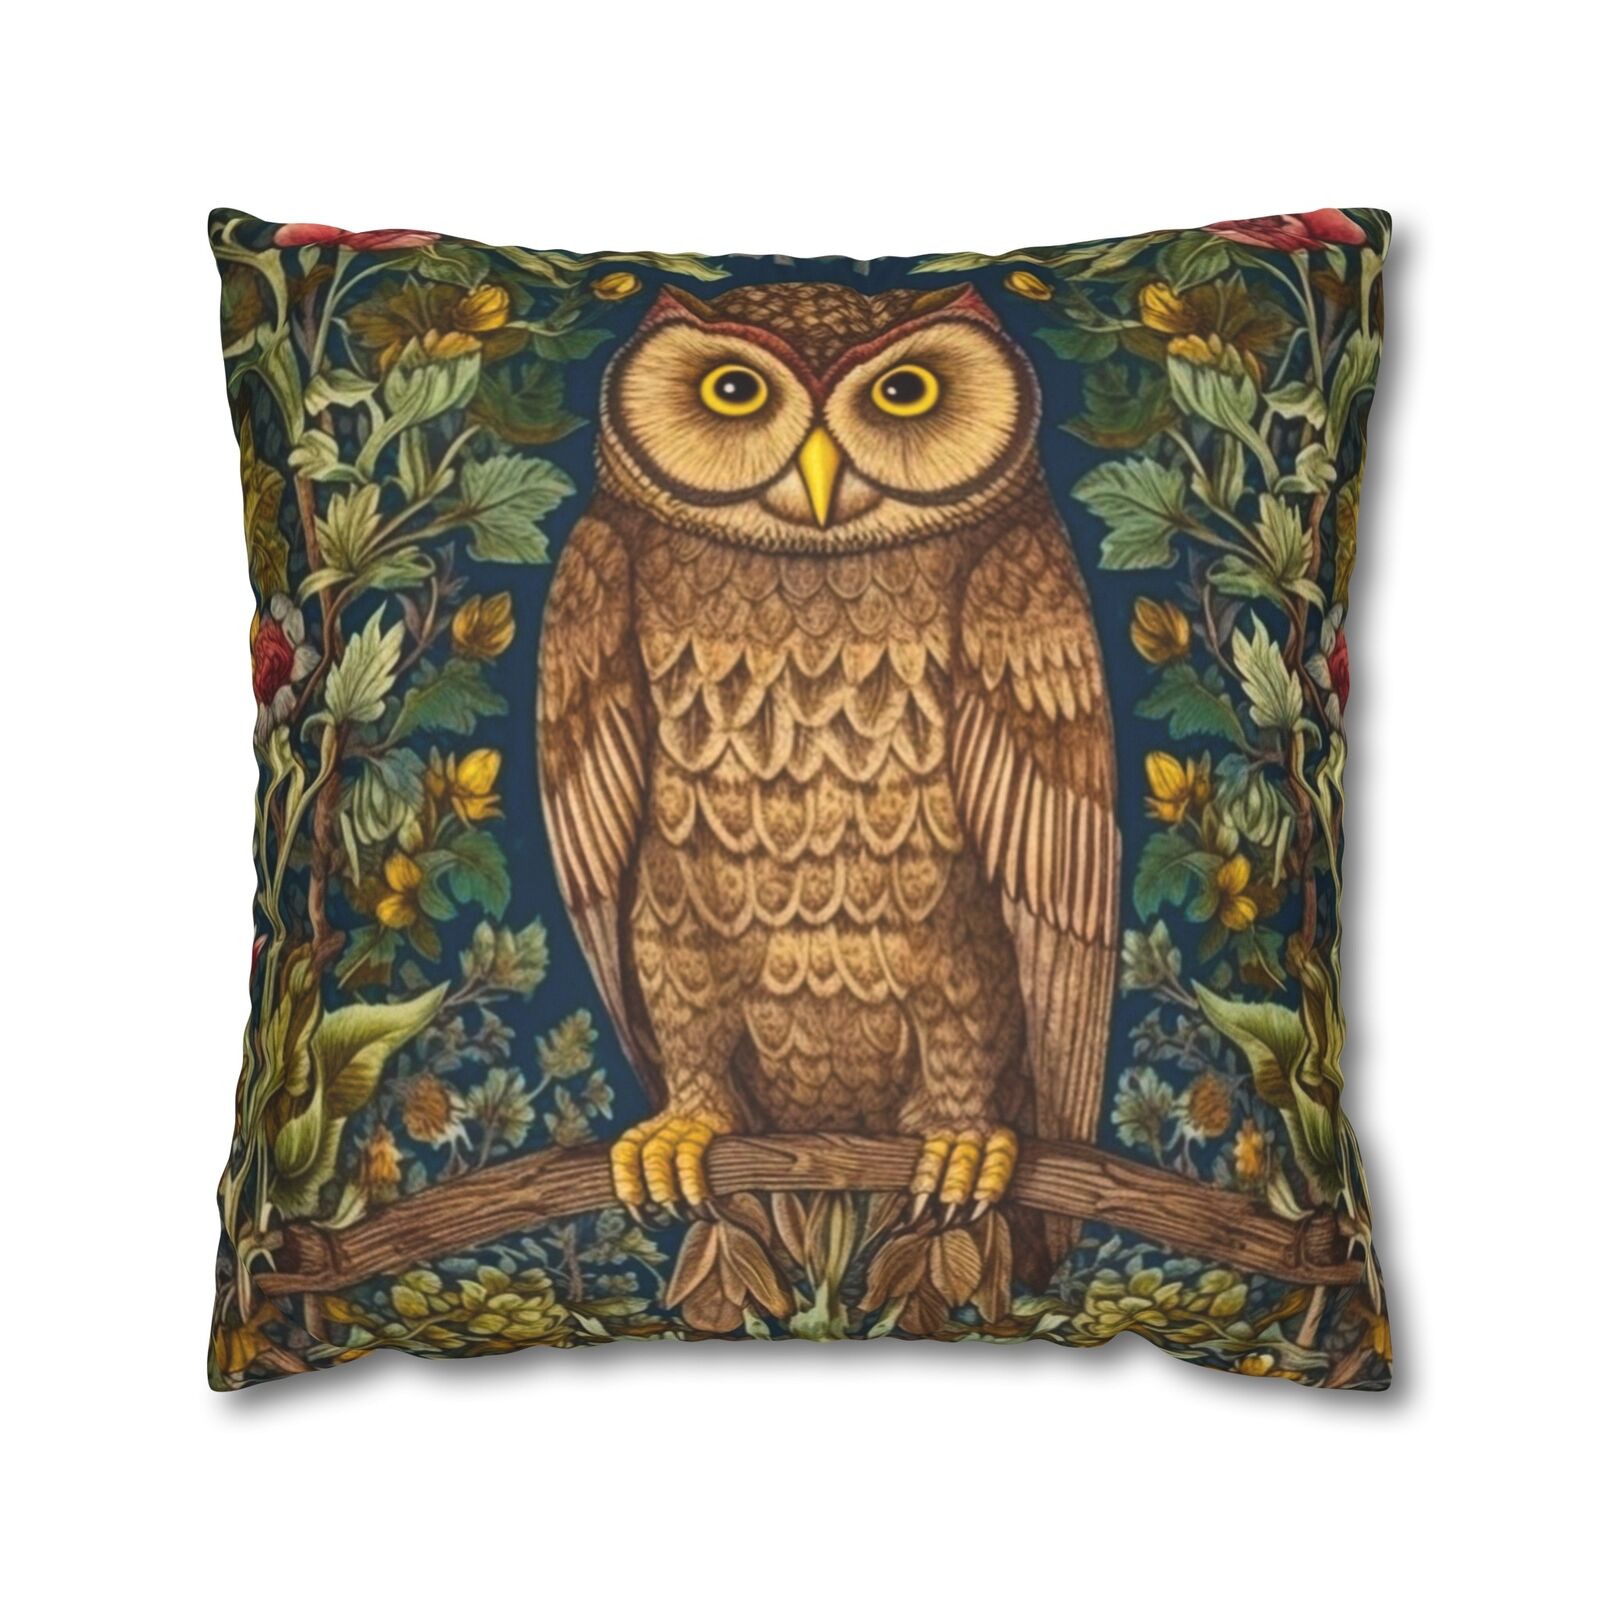 William Morris Inspired Owl Forest Decor Pillowcase, Cottagecore Owl Lover Gift